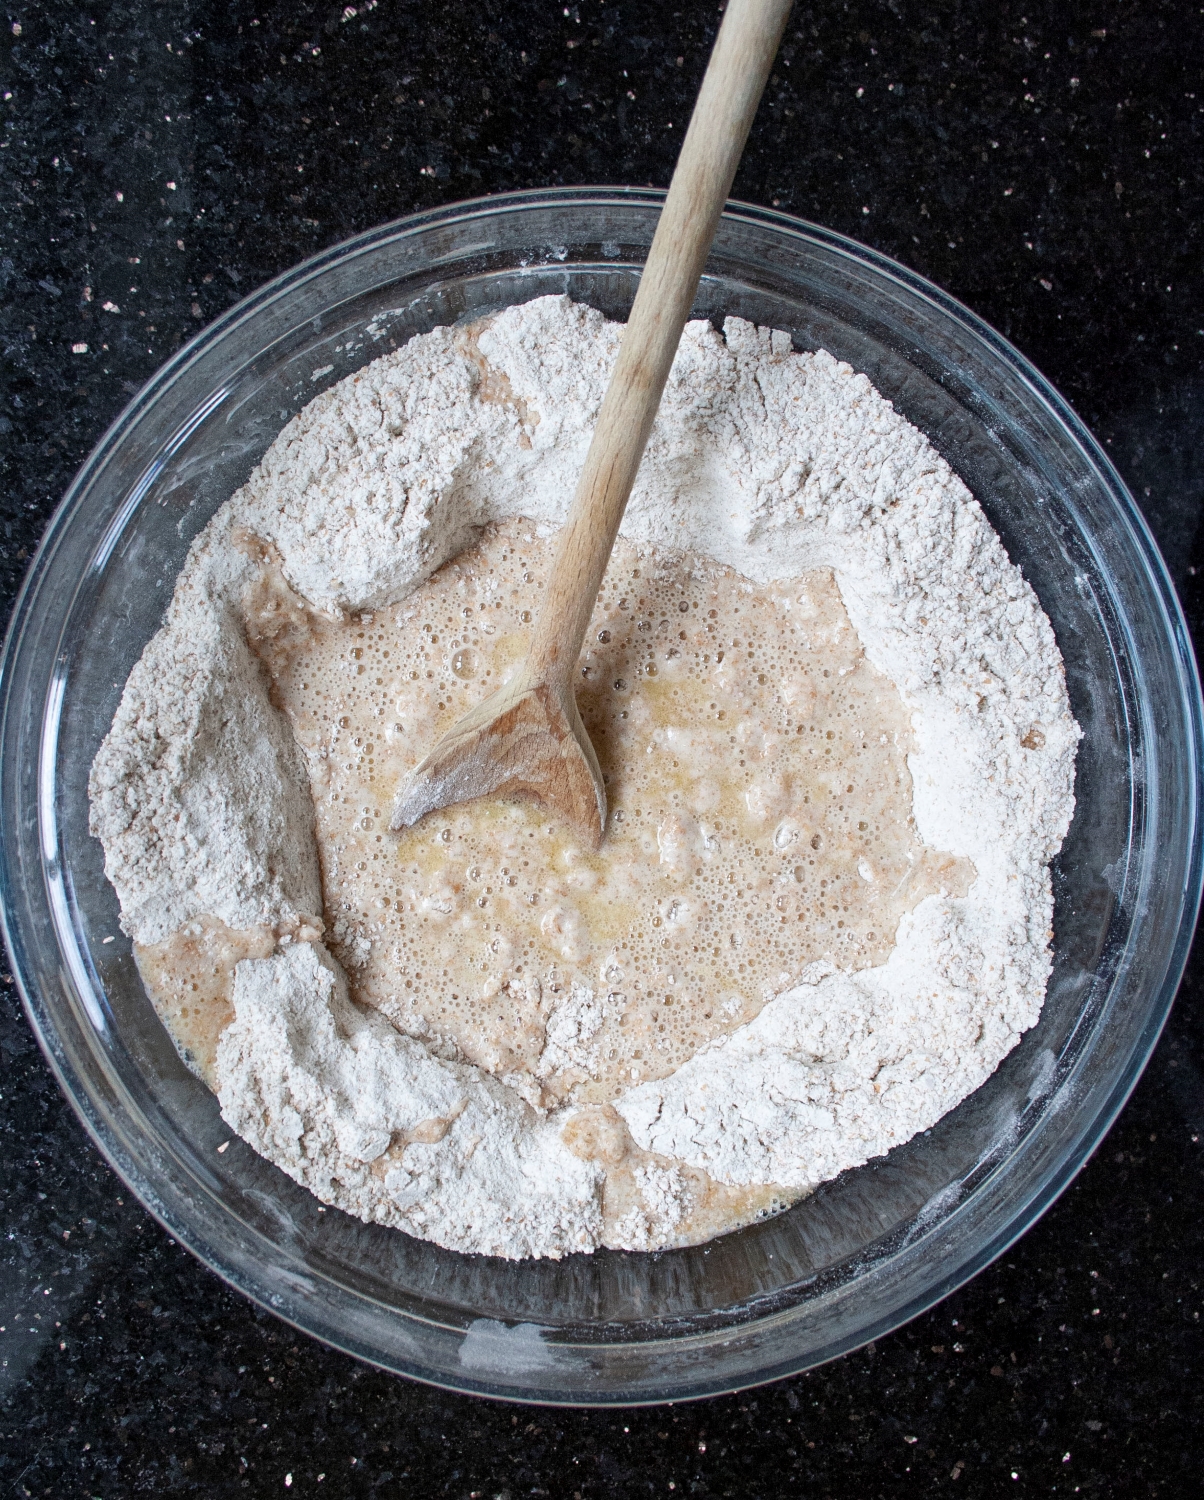 butter mixture in flour well